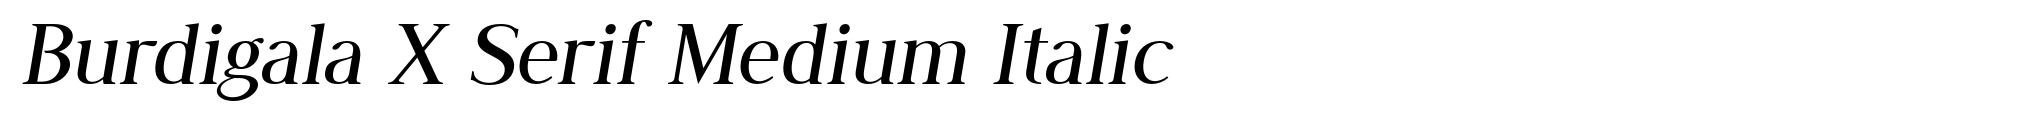 Burdigala X Serif Medium Italic image